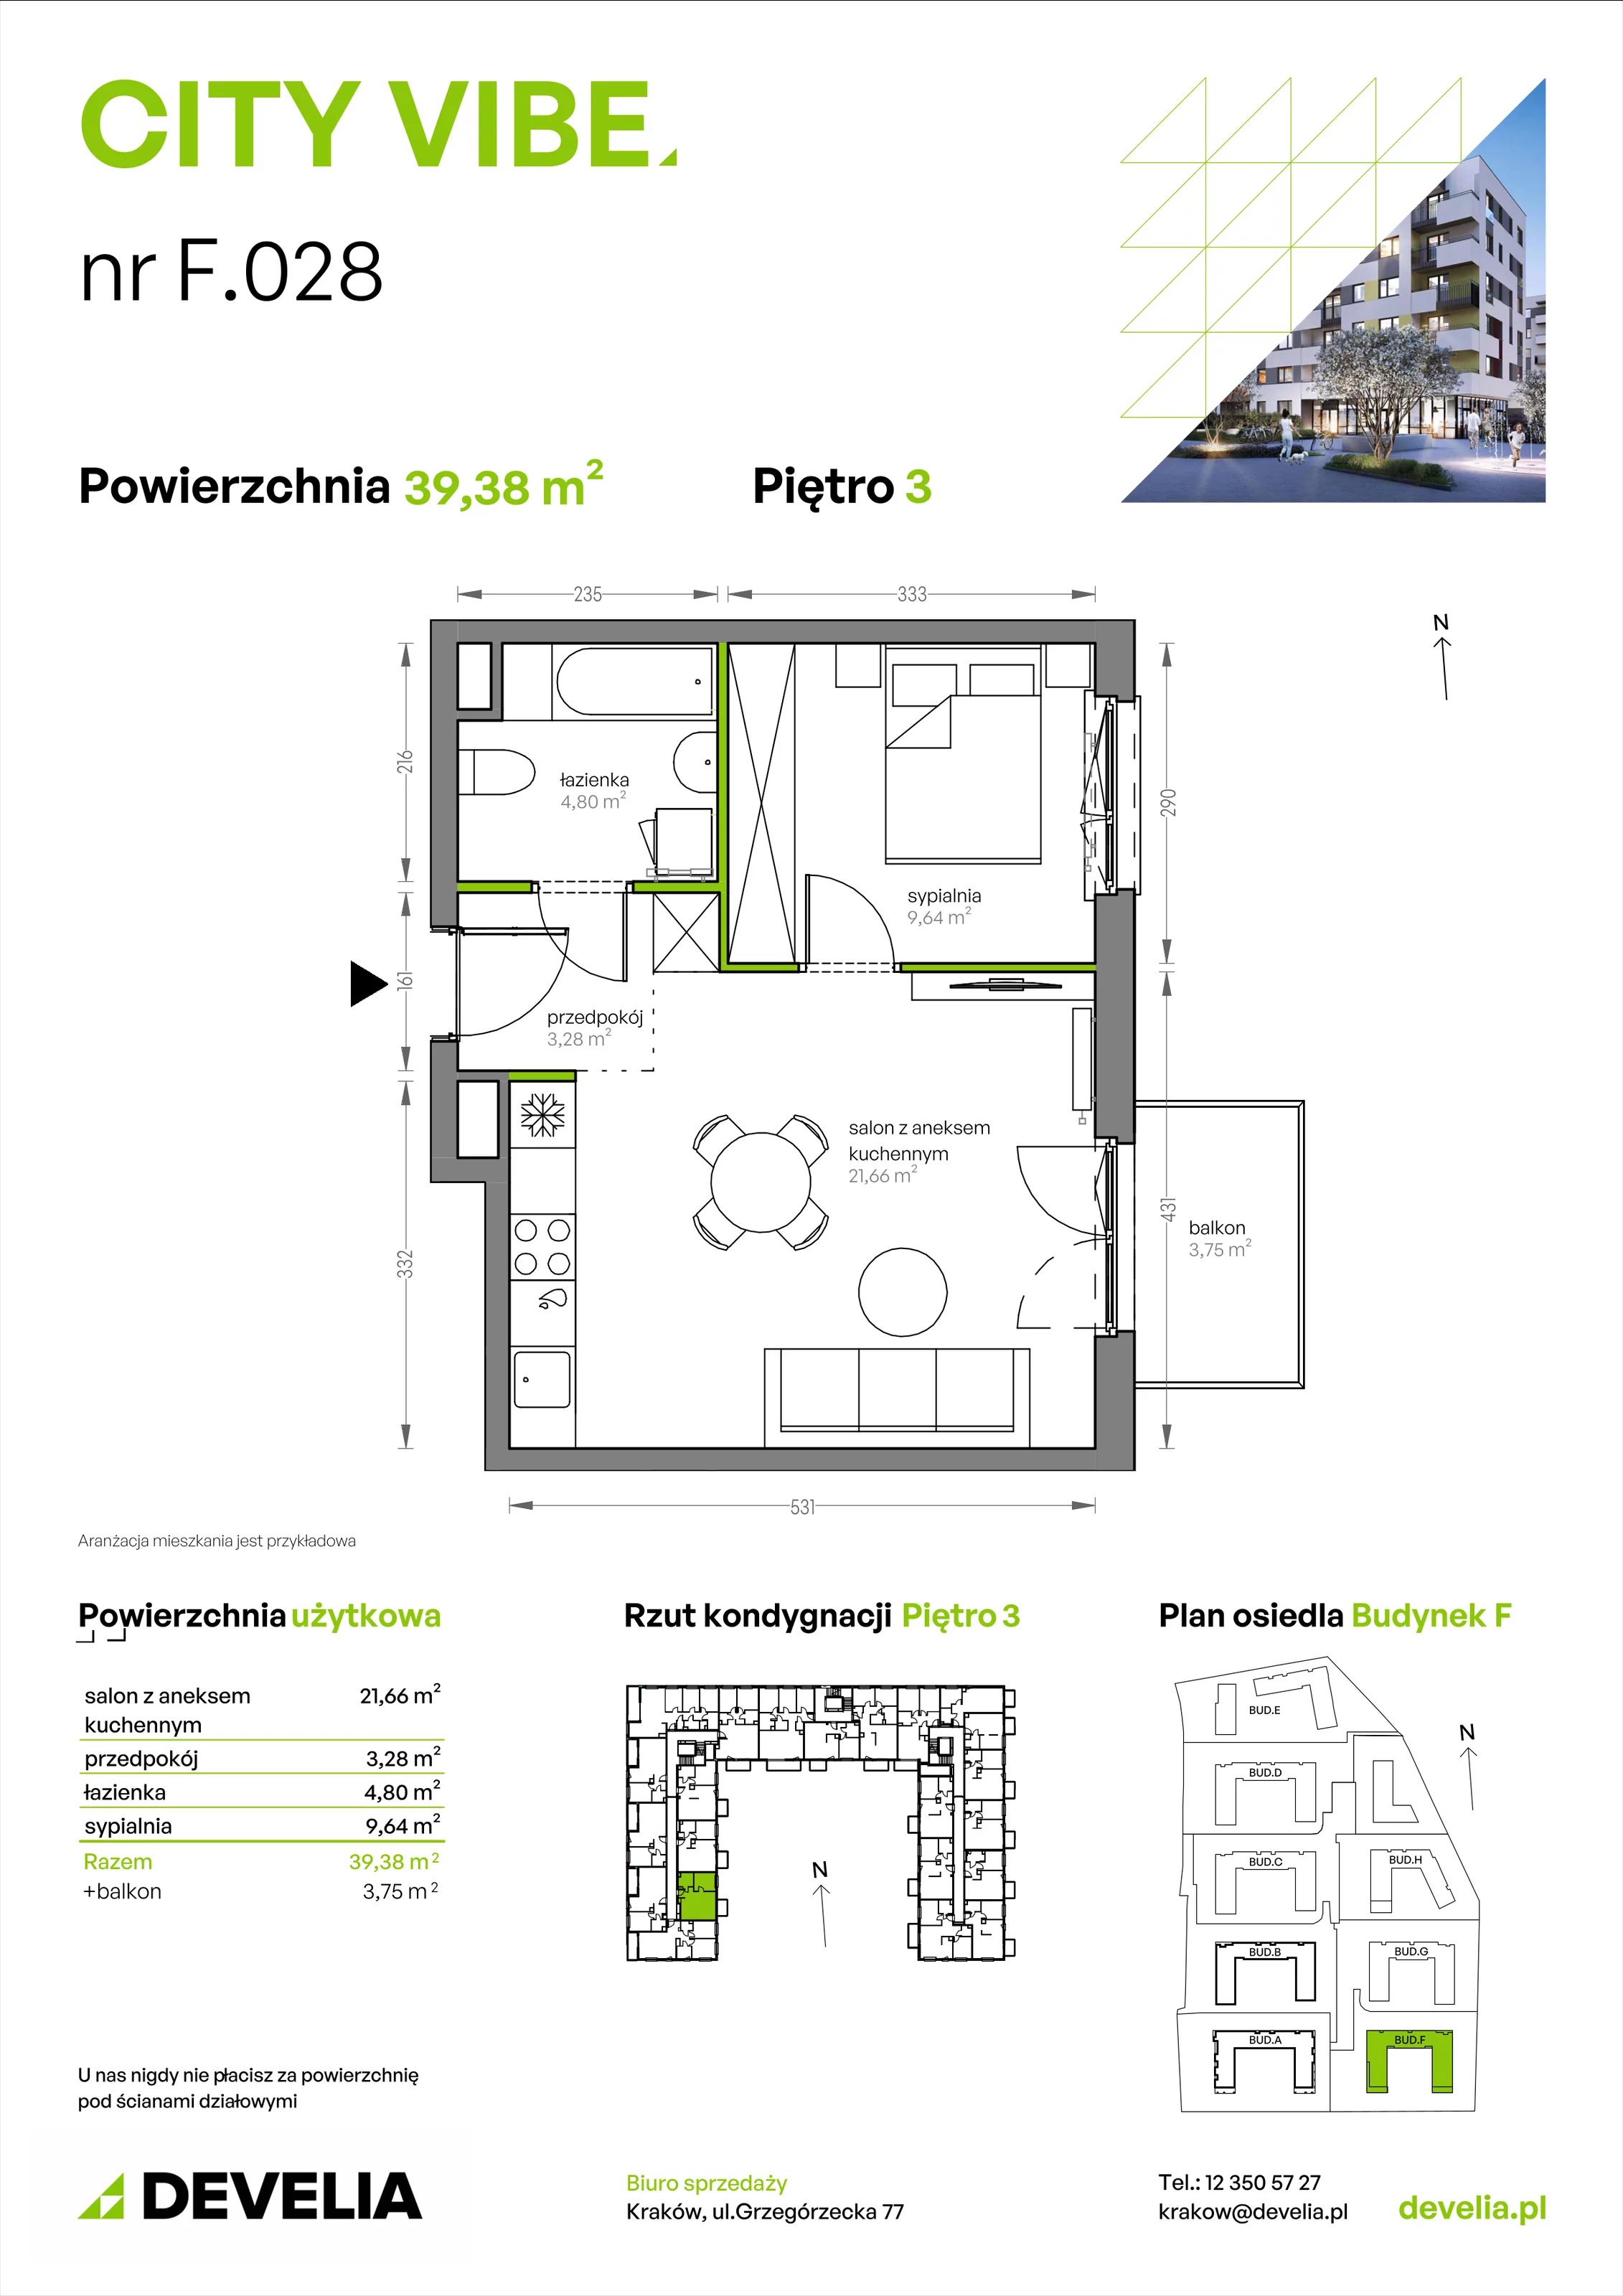 Mieszkanie 39,38 m², piętro 3, oferta nr F/028, City Vibe etap V, Kraków, Podgórze, Płaszów, ul. Myśliwska 68